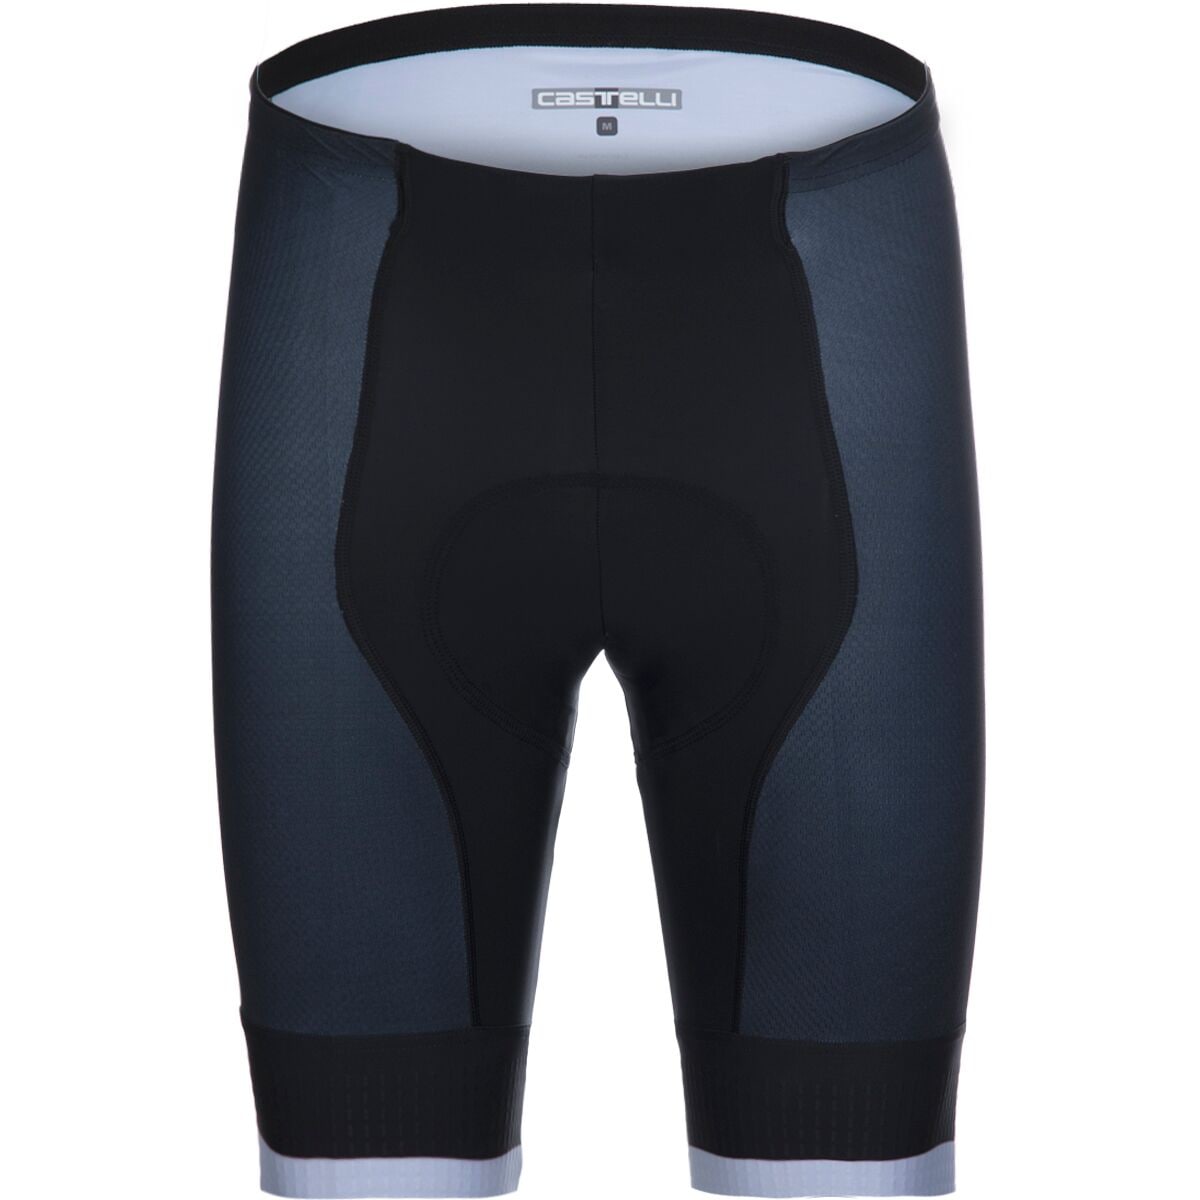 Details about   CASTELLI Culotte Competizione Kit SAVIL/DUST 4521007414 Men’s Clothing Shorts 